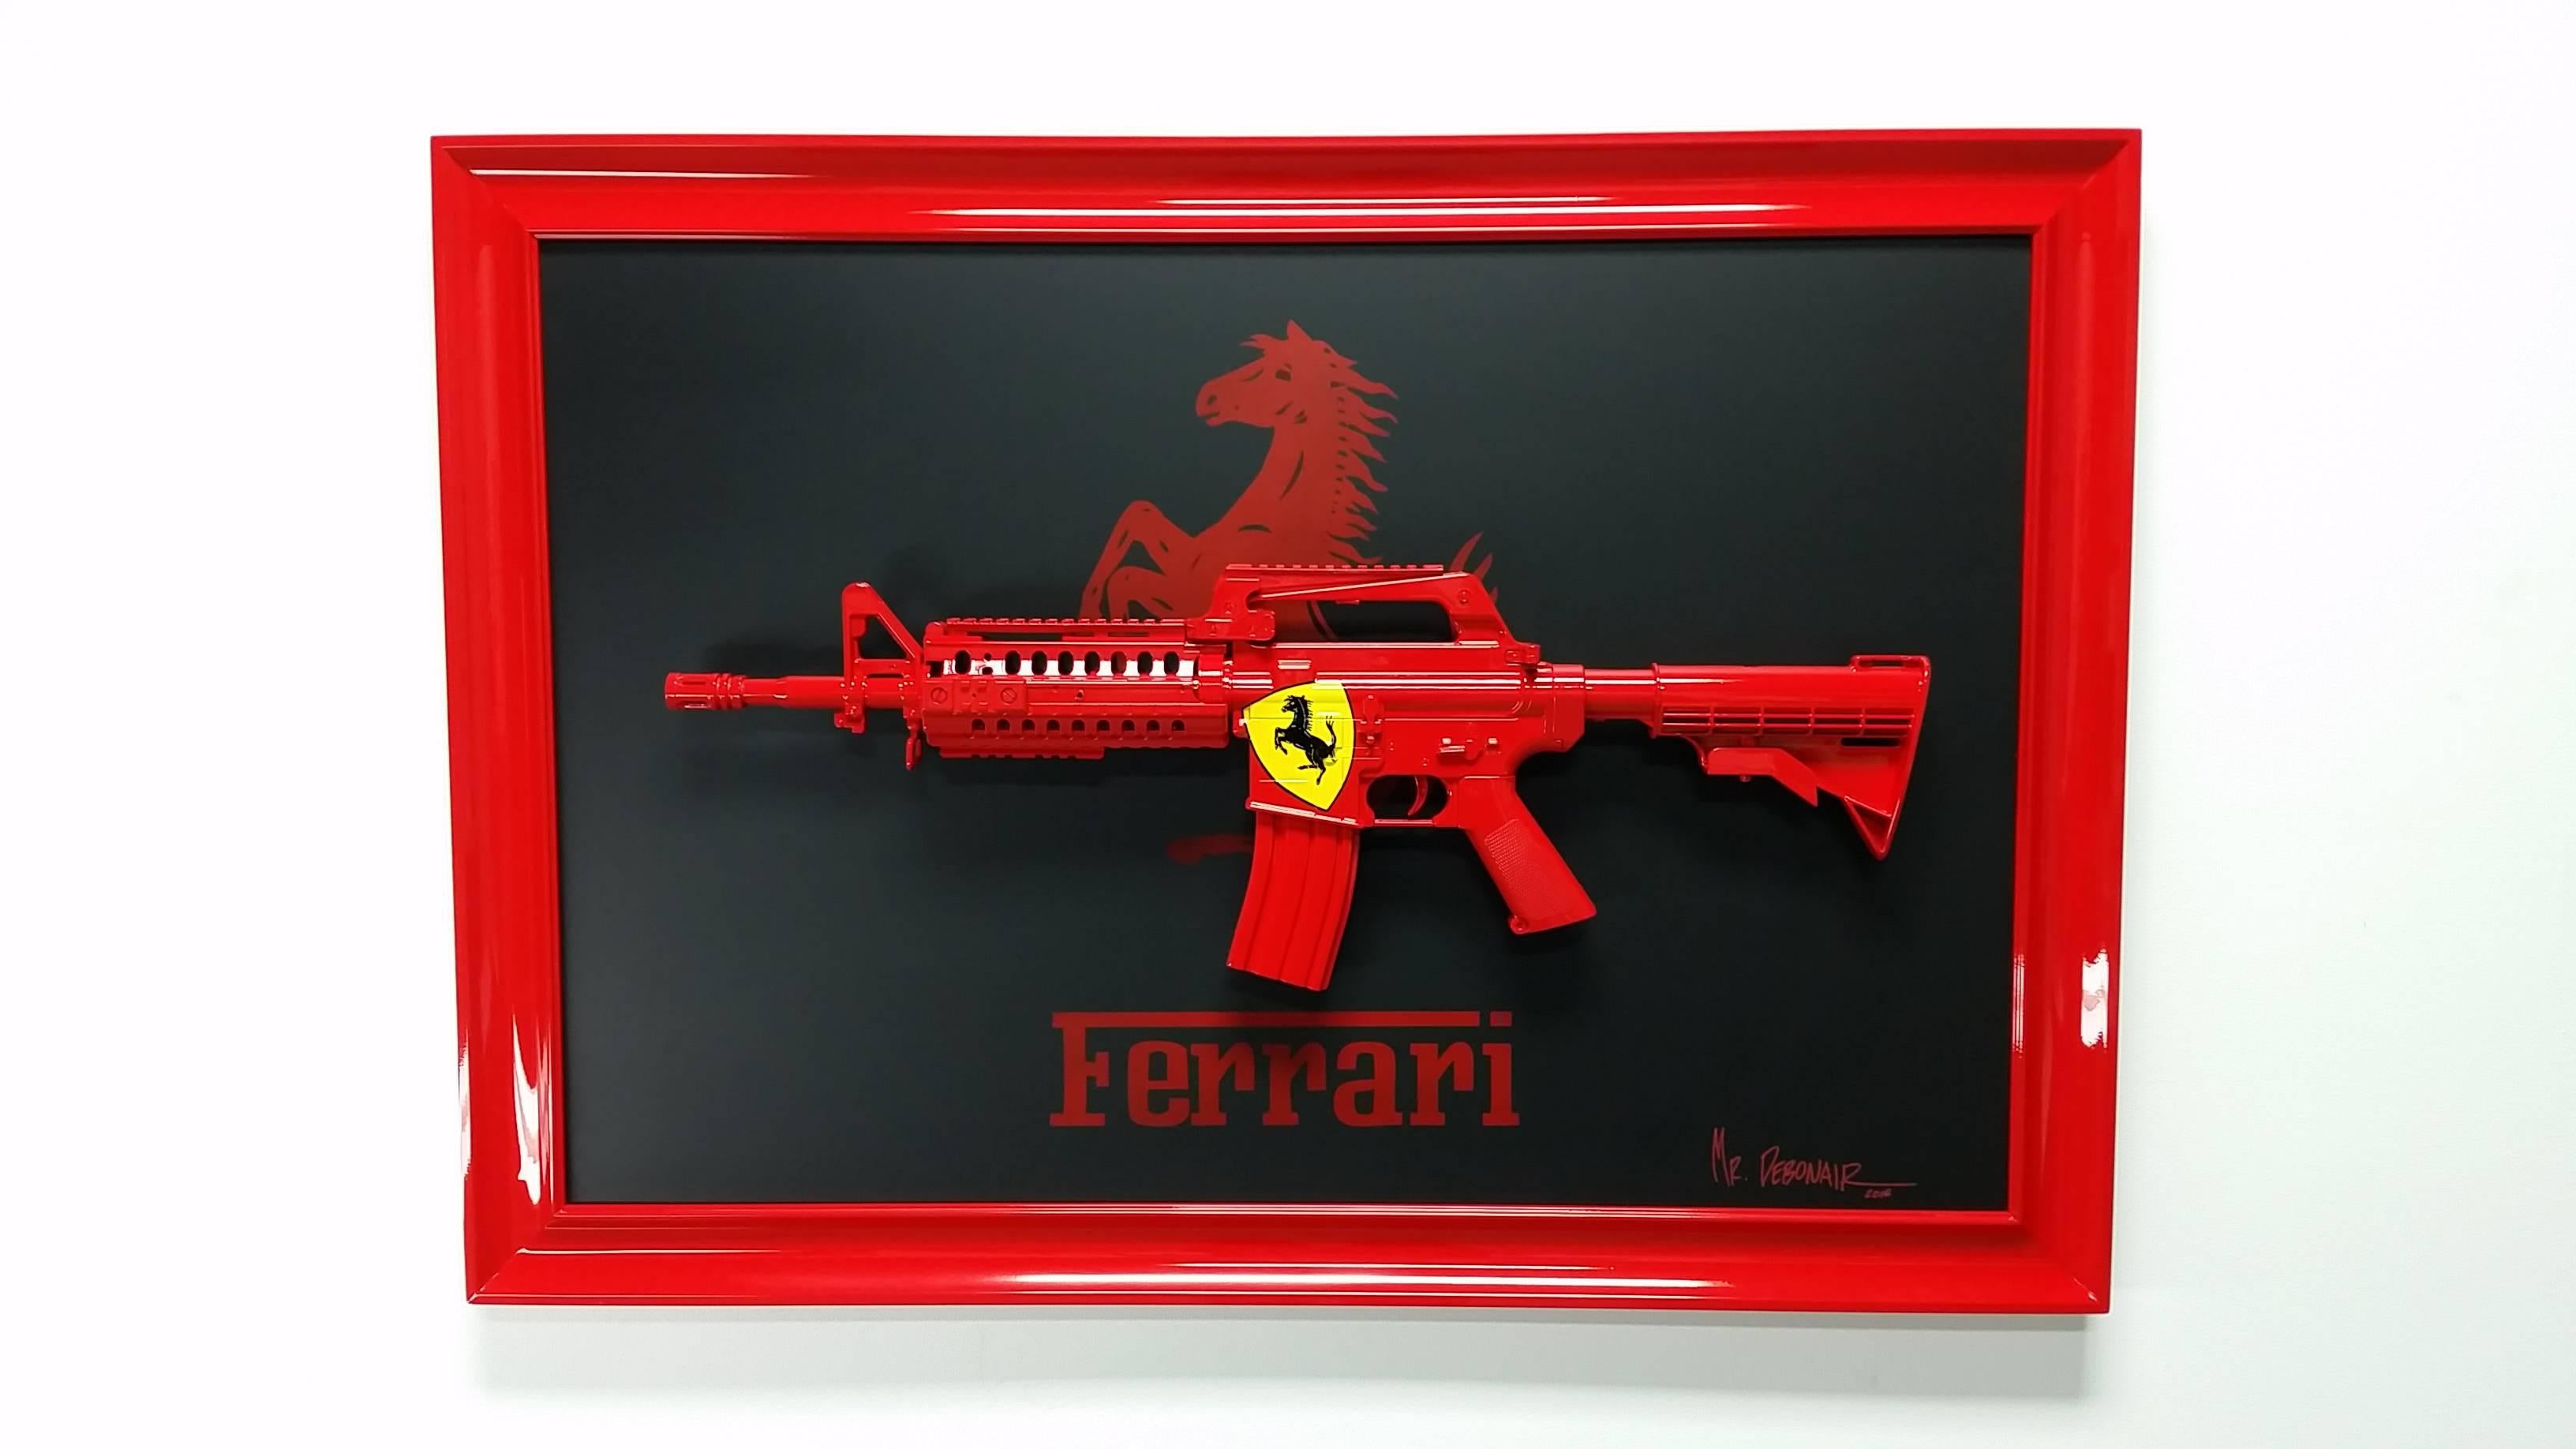 Ferrari Gun - Mixed Media Art by Mr Debonair